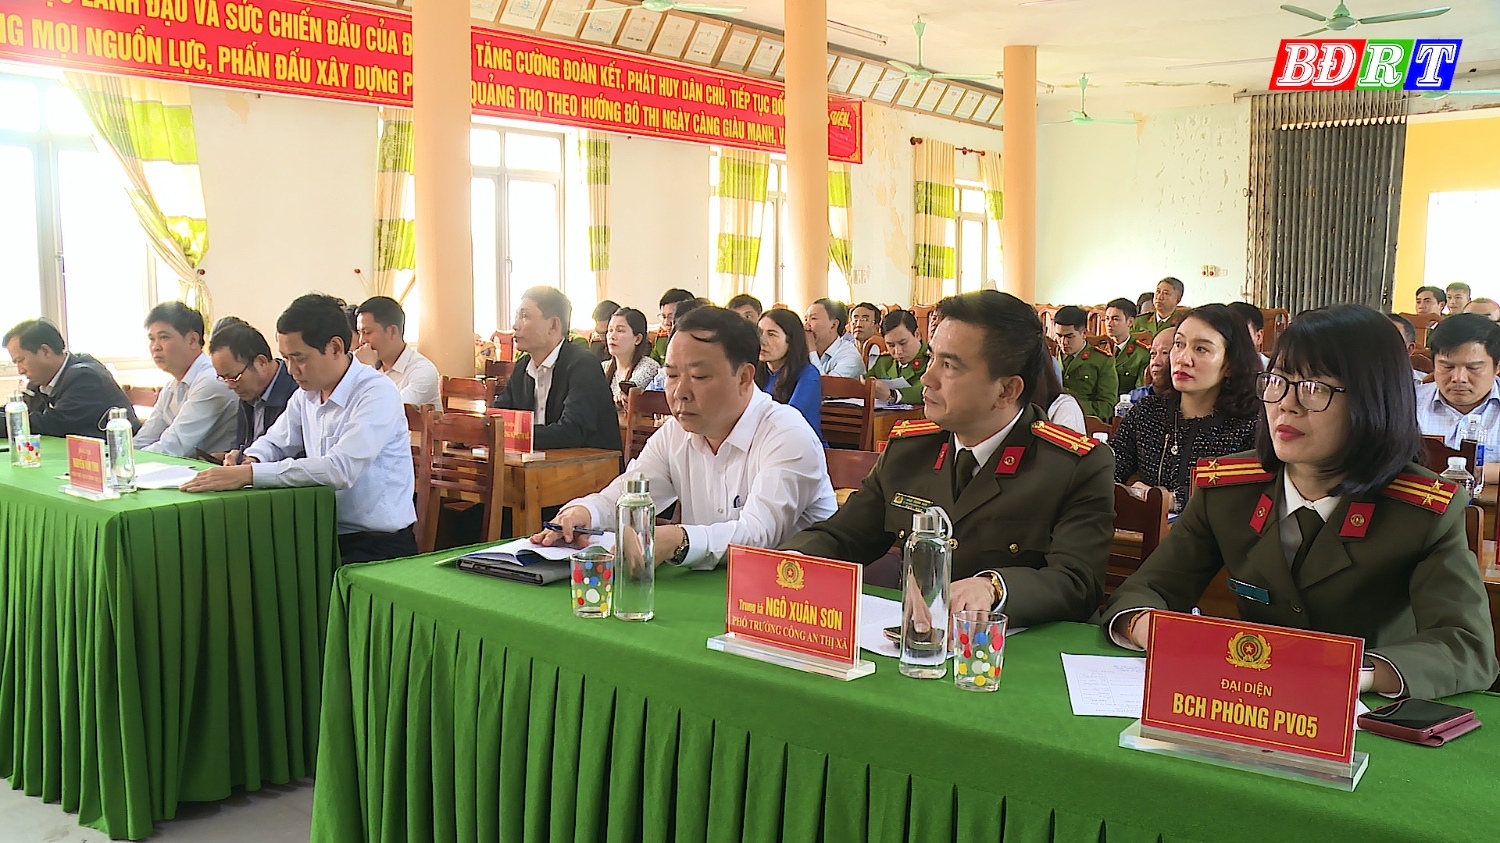 Các đại biểu tham dự hội nghị (32)